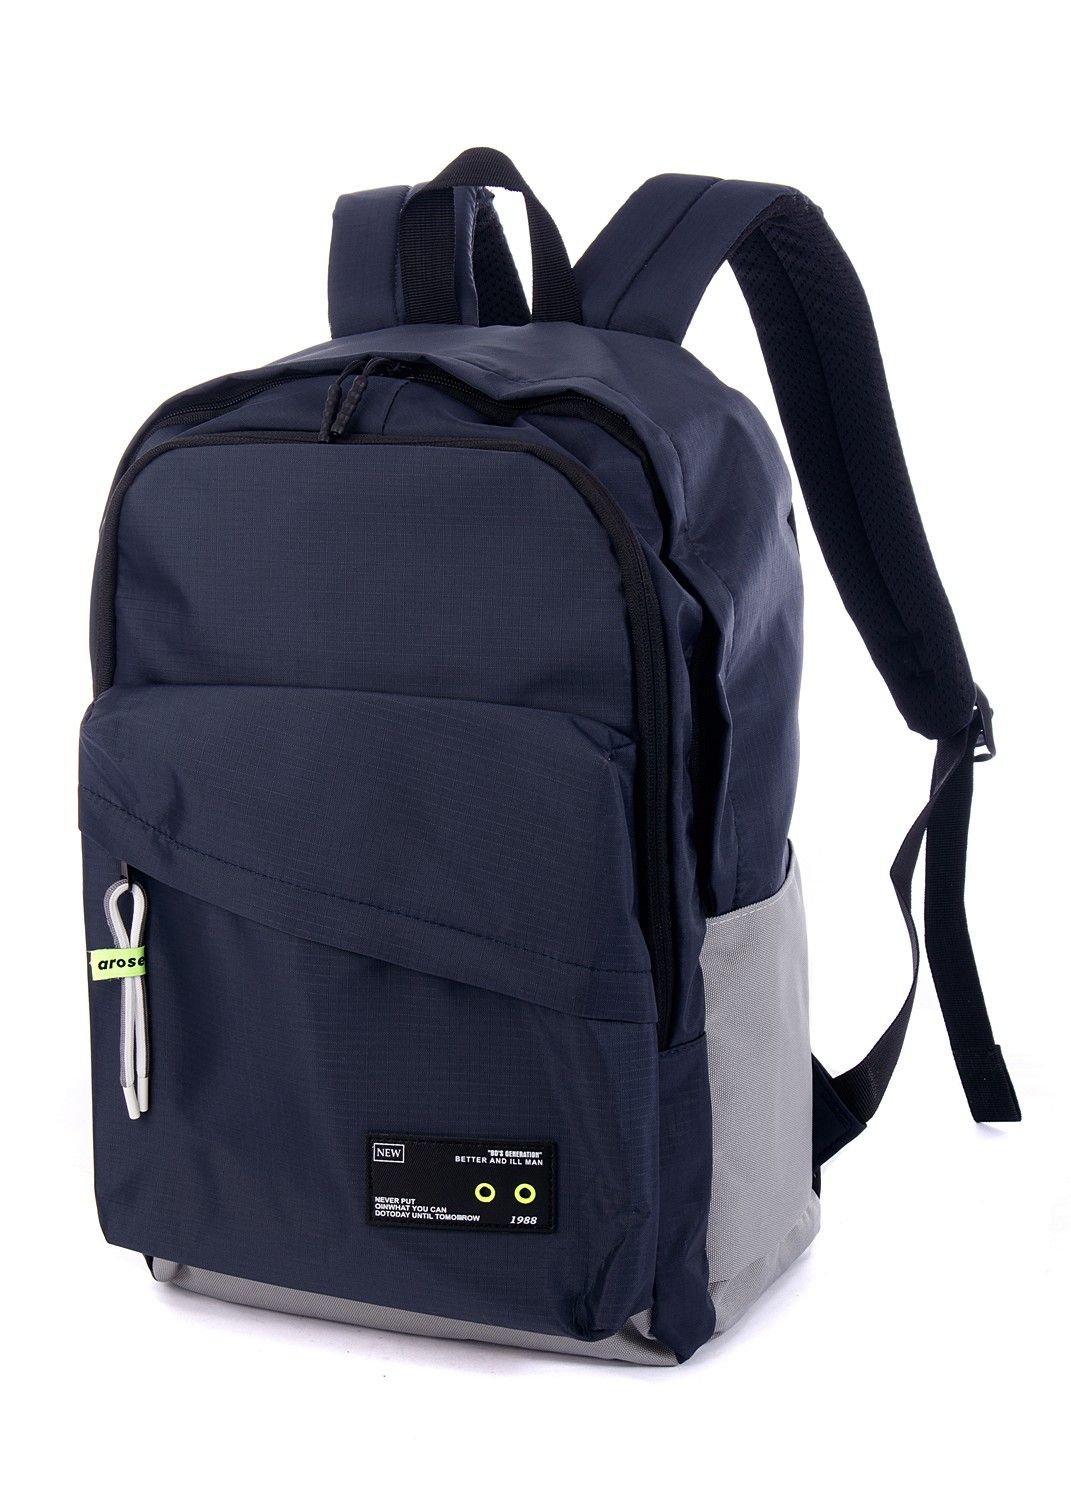 Рюкзак мужской темно-синий, однотонный, городской, с широкими лямками, 20л.